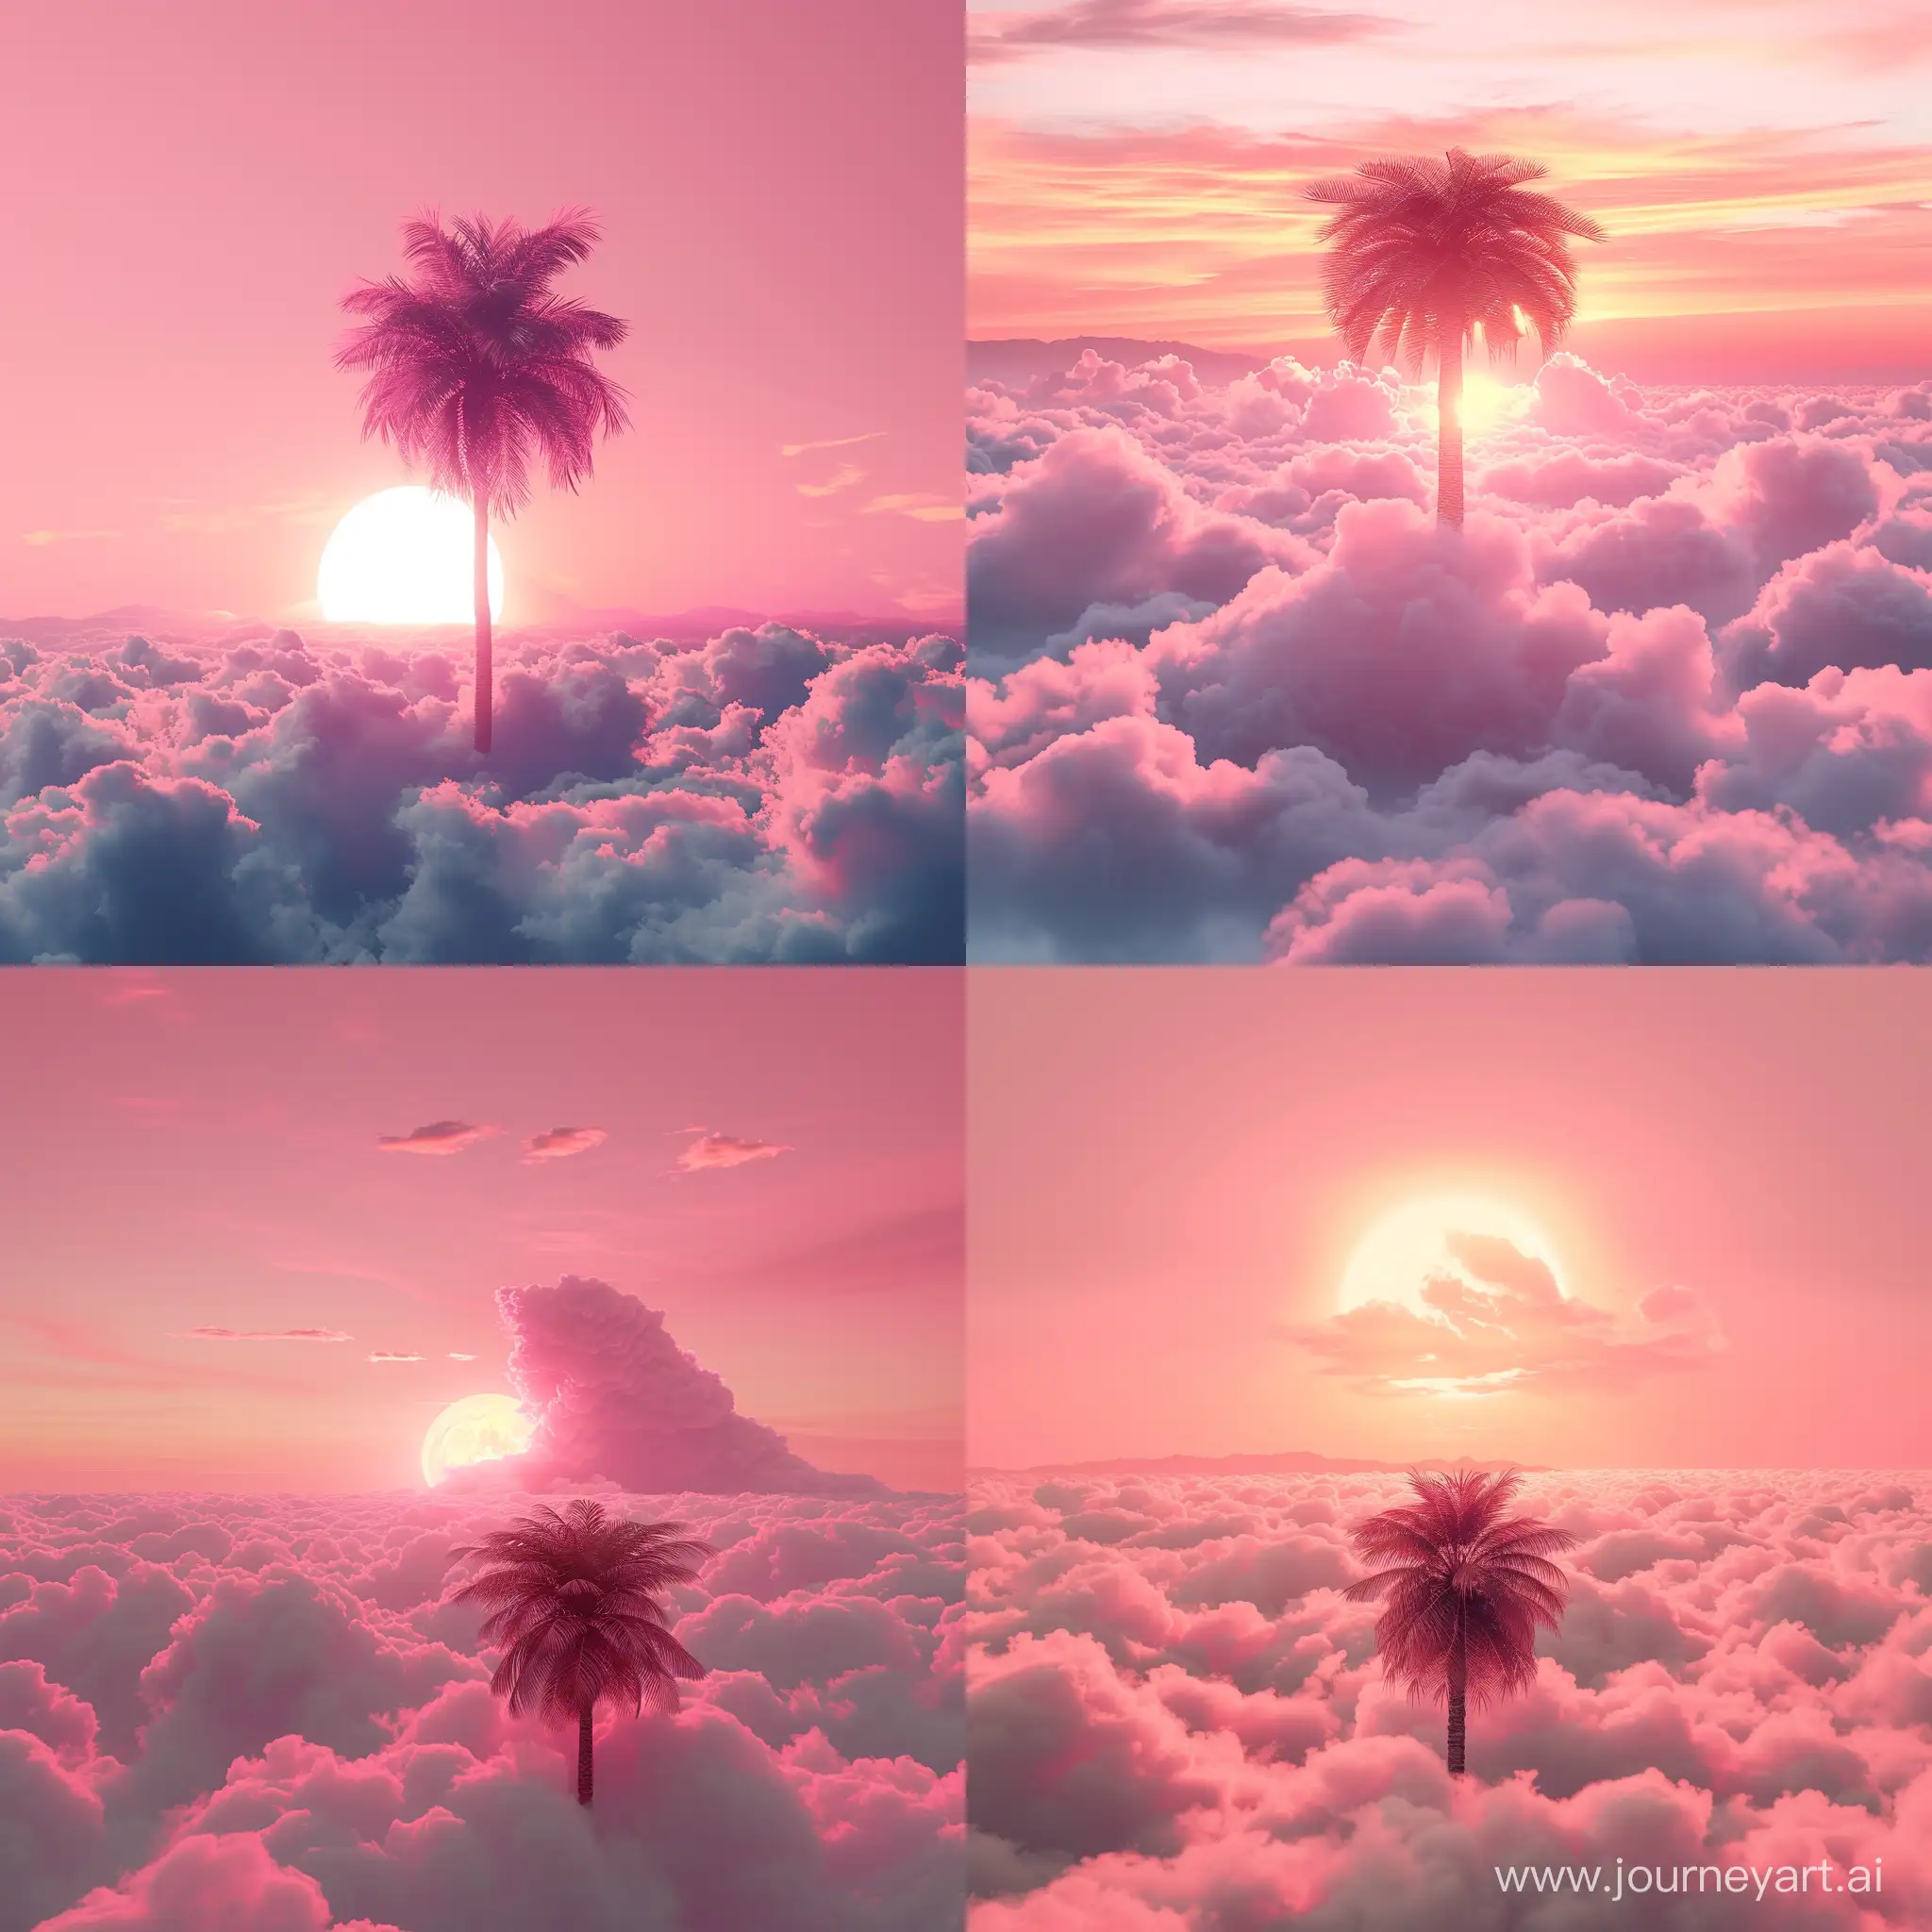  это рисунок, розовый закат, пальма в облаках